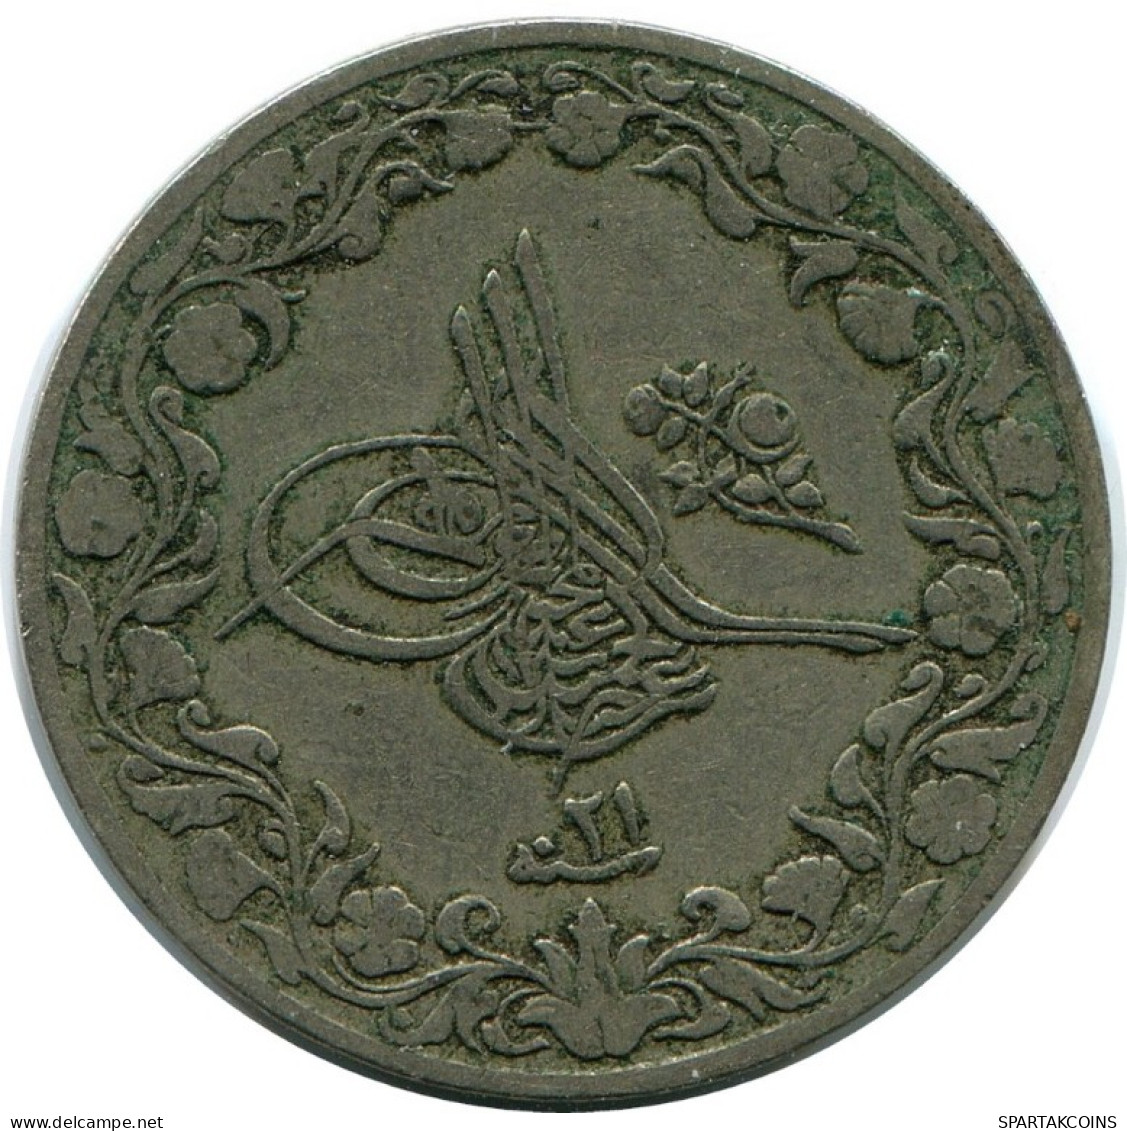 5/10 QIRSH 1895 ÄGYPTEN EGYPT Islamisch Münze #AH281.10.D.A - Egypt